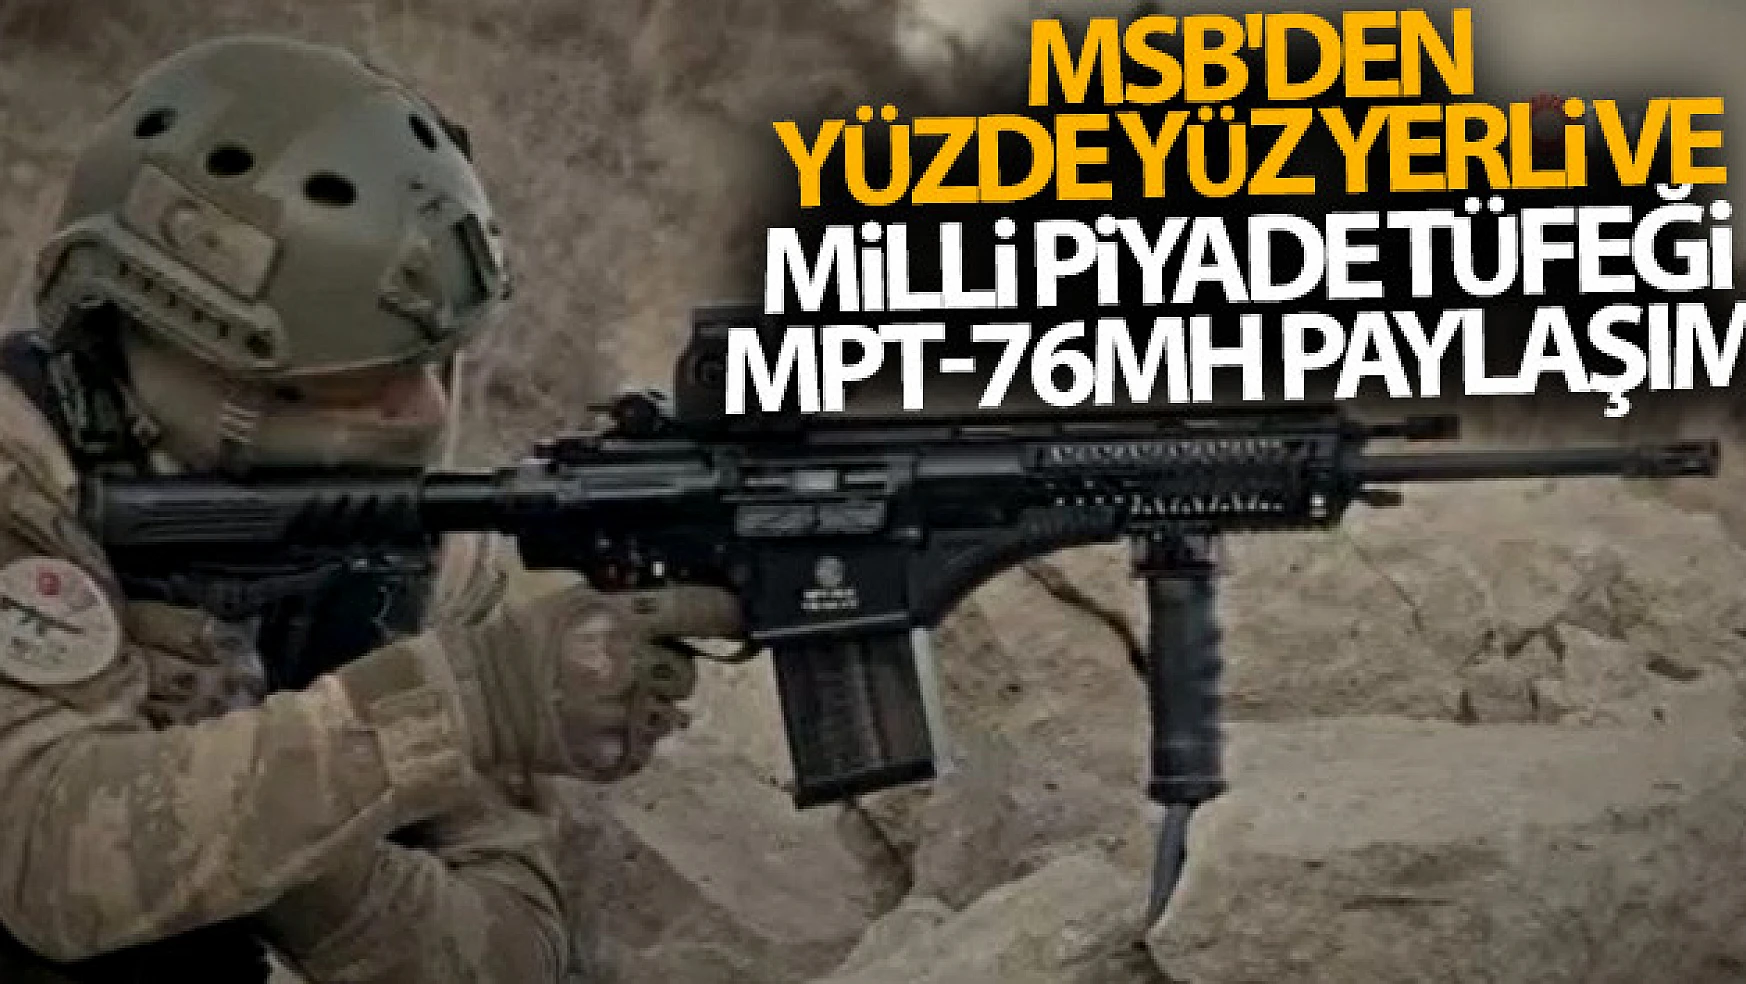 MSB'den yüzde yüz yerli ve milli piyade tüfeği MPT-76MH paylaşımı